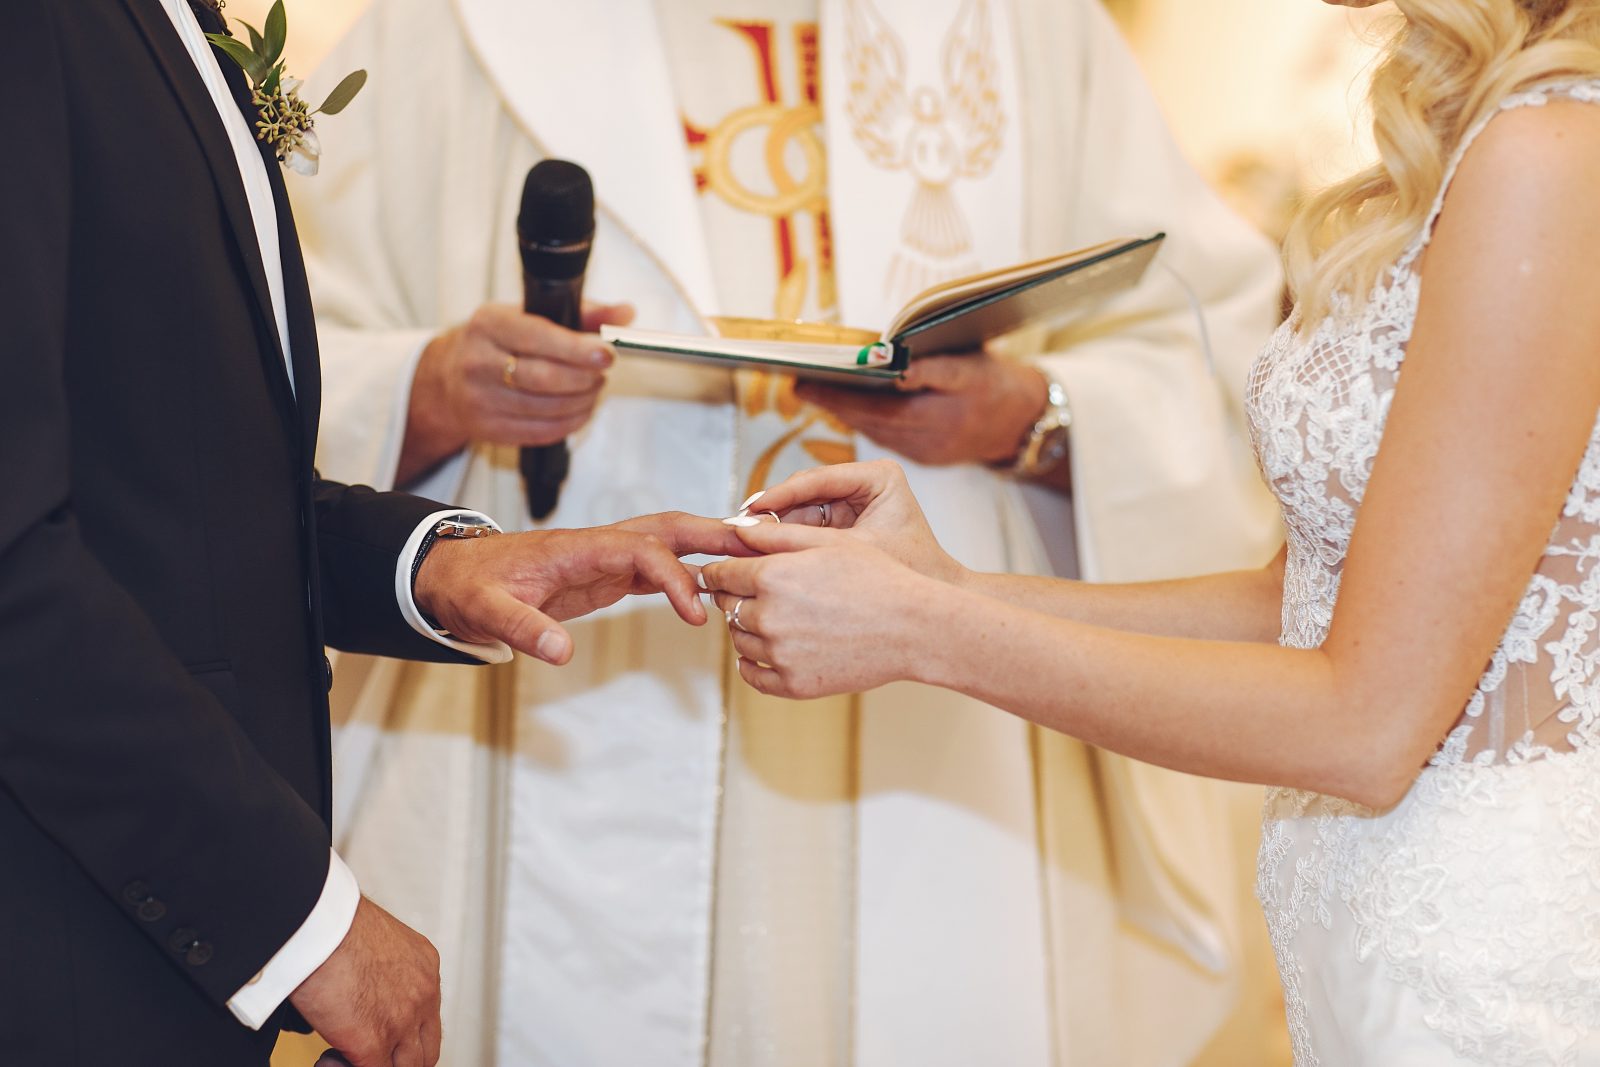 Nella foto un prete che unisce in nozze una coppia: nella Fase 2 del Coronavirus sono concessi i matrimoni in chiesa con gli invitati